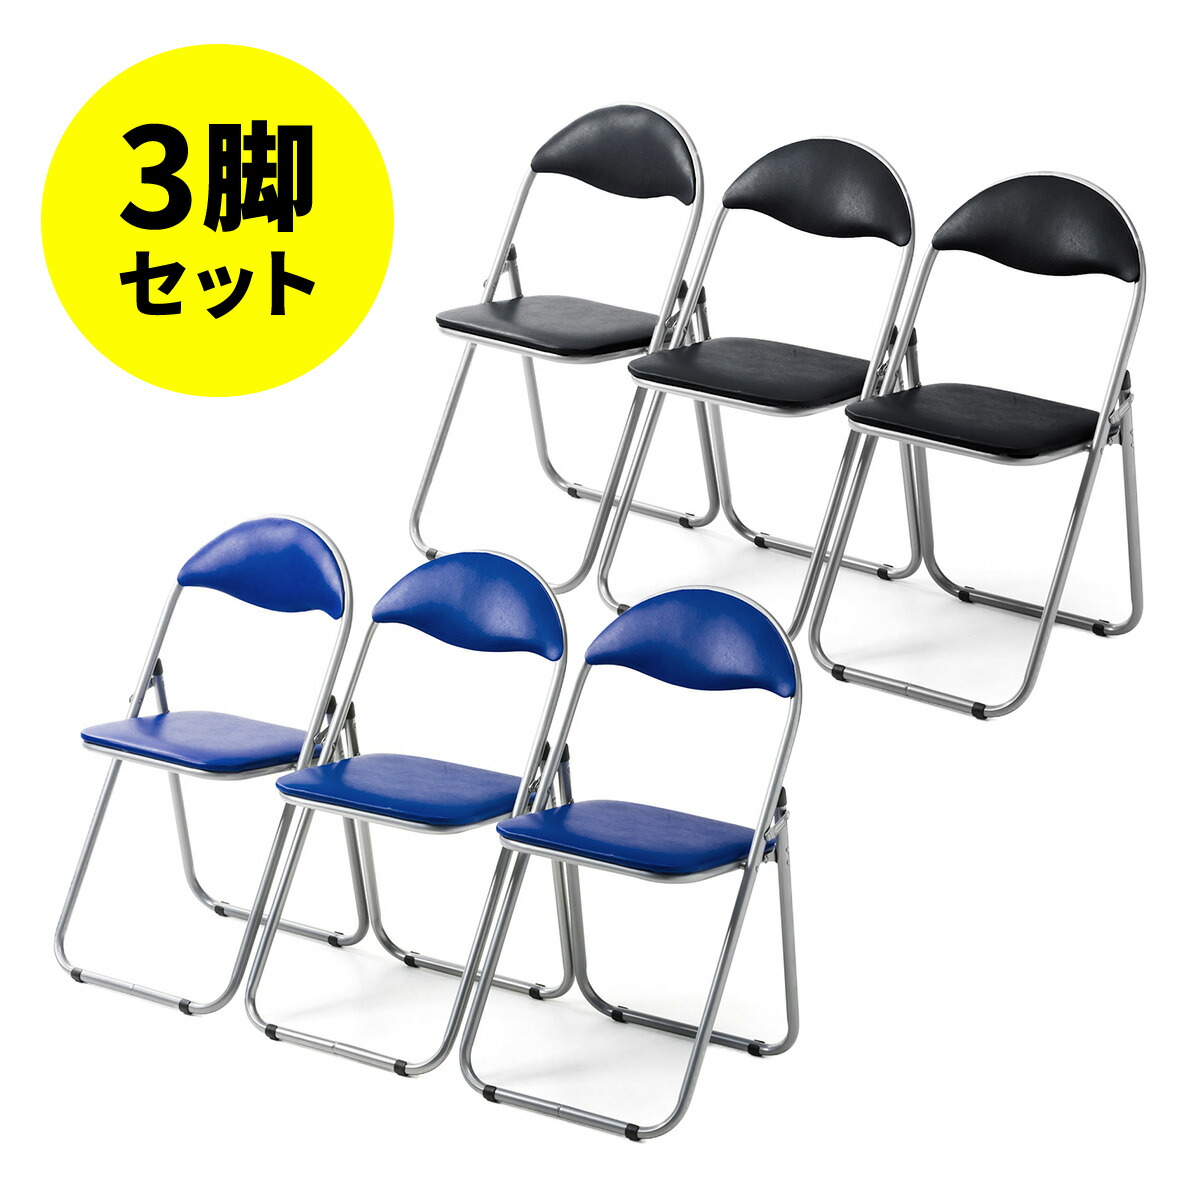 パイプ椅子 パイプいす パイプチェア おしゃれ 軽量 安い 会議椅子 5脚 ブルー スタッキングチェア 通販